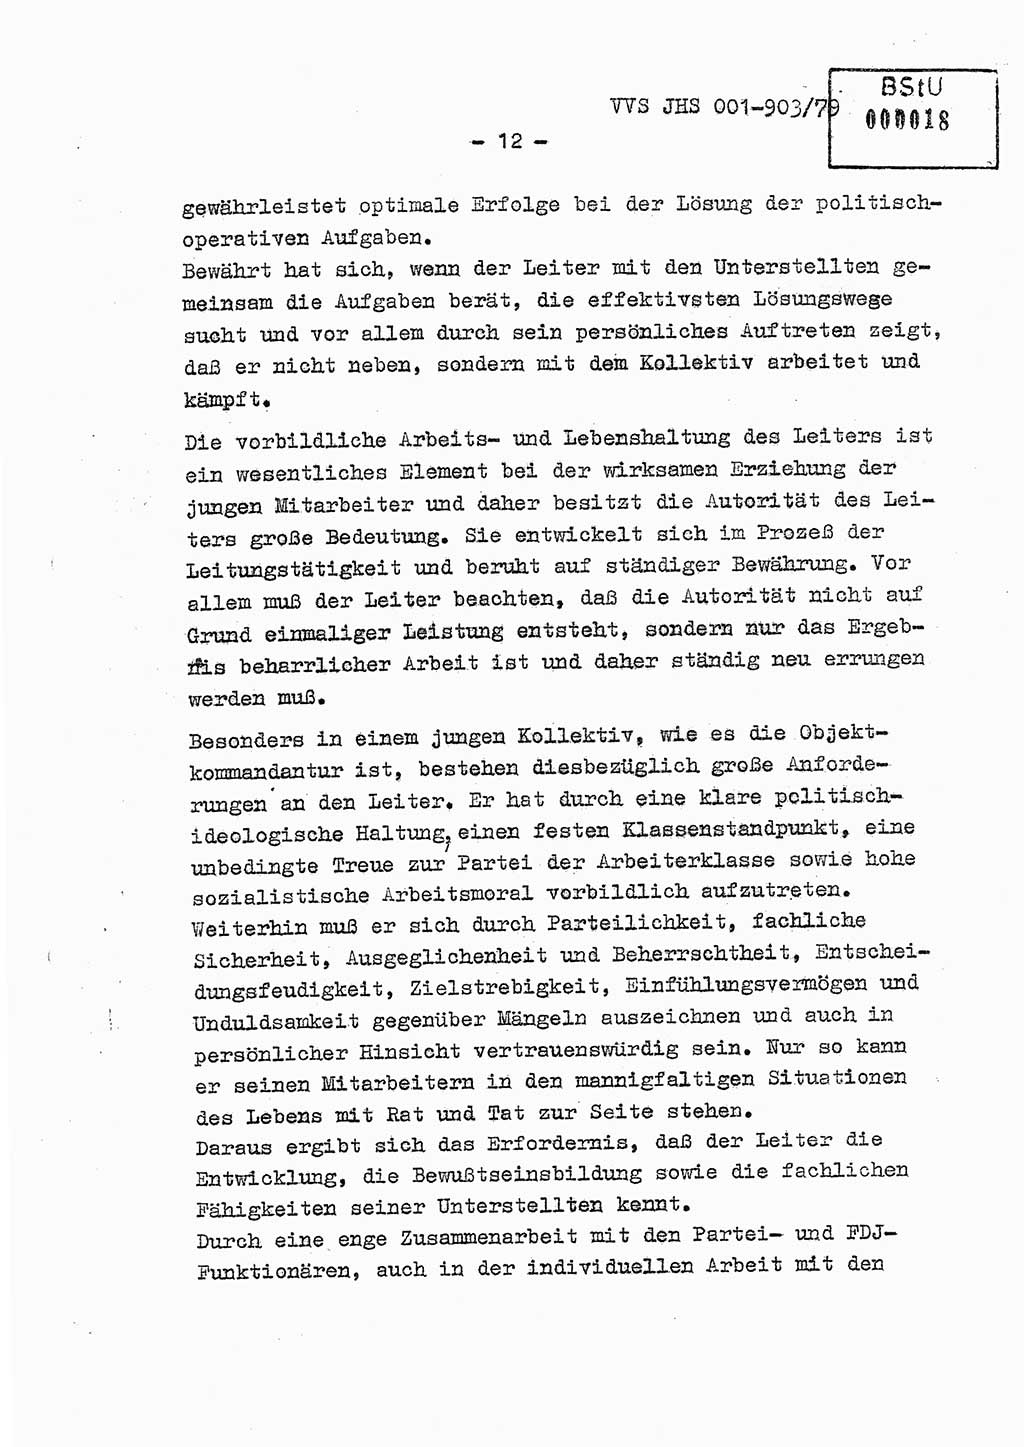 Fachschulabschlußarbeit Oberleutnant Jochen Pfeffer (HA Ⅸ/AGL), Ministerium für Staatssicherheit (MfS) [Deutsche Demokratische Republik (DDR)], Juristische Hochschule (JHS), Vertrauliche Verschlußsache (VVS) 001-903/79, Potsdam 1979, Seite 12 (FS-Abschl.-Arb. MfS DDR JHS VVS 001-903/79 1979, S. 12)